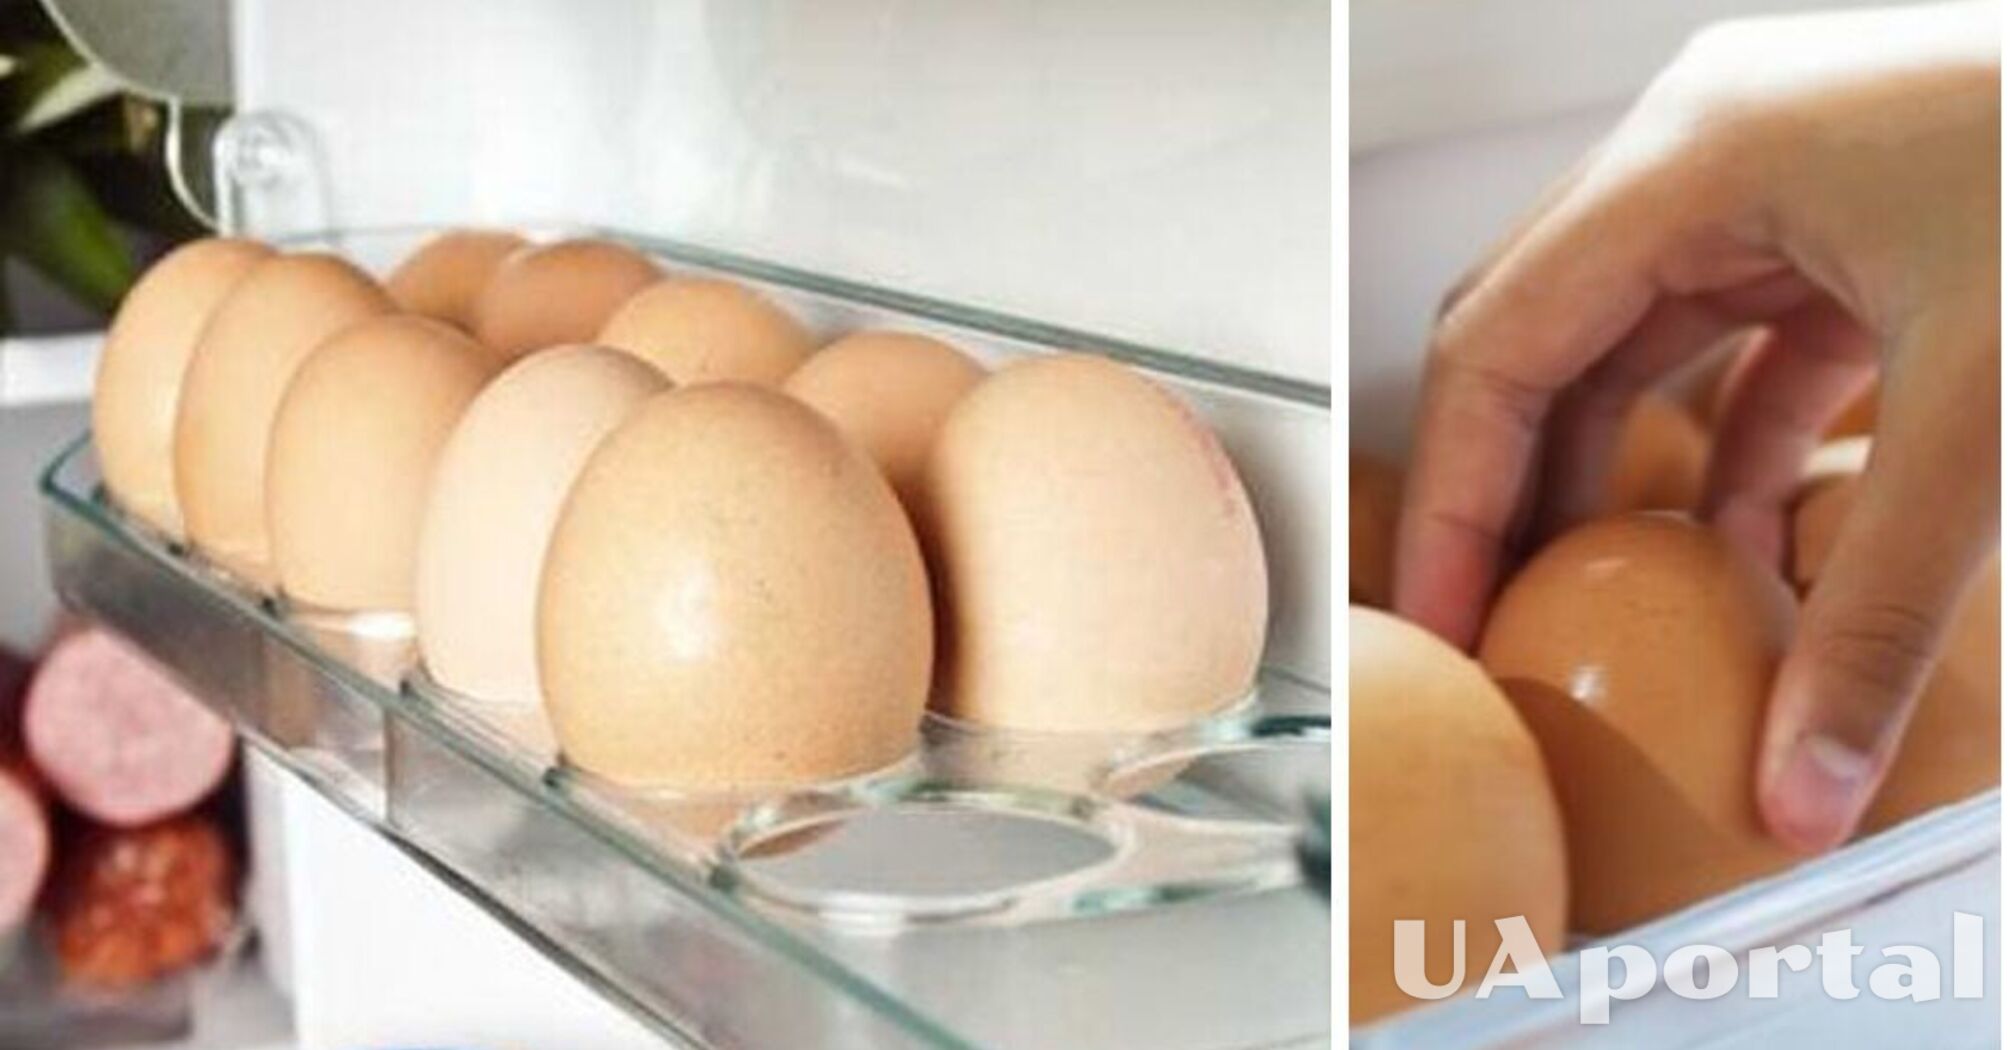 Якою стороною класти яйця в холодильник